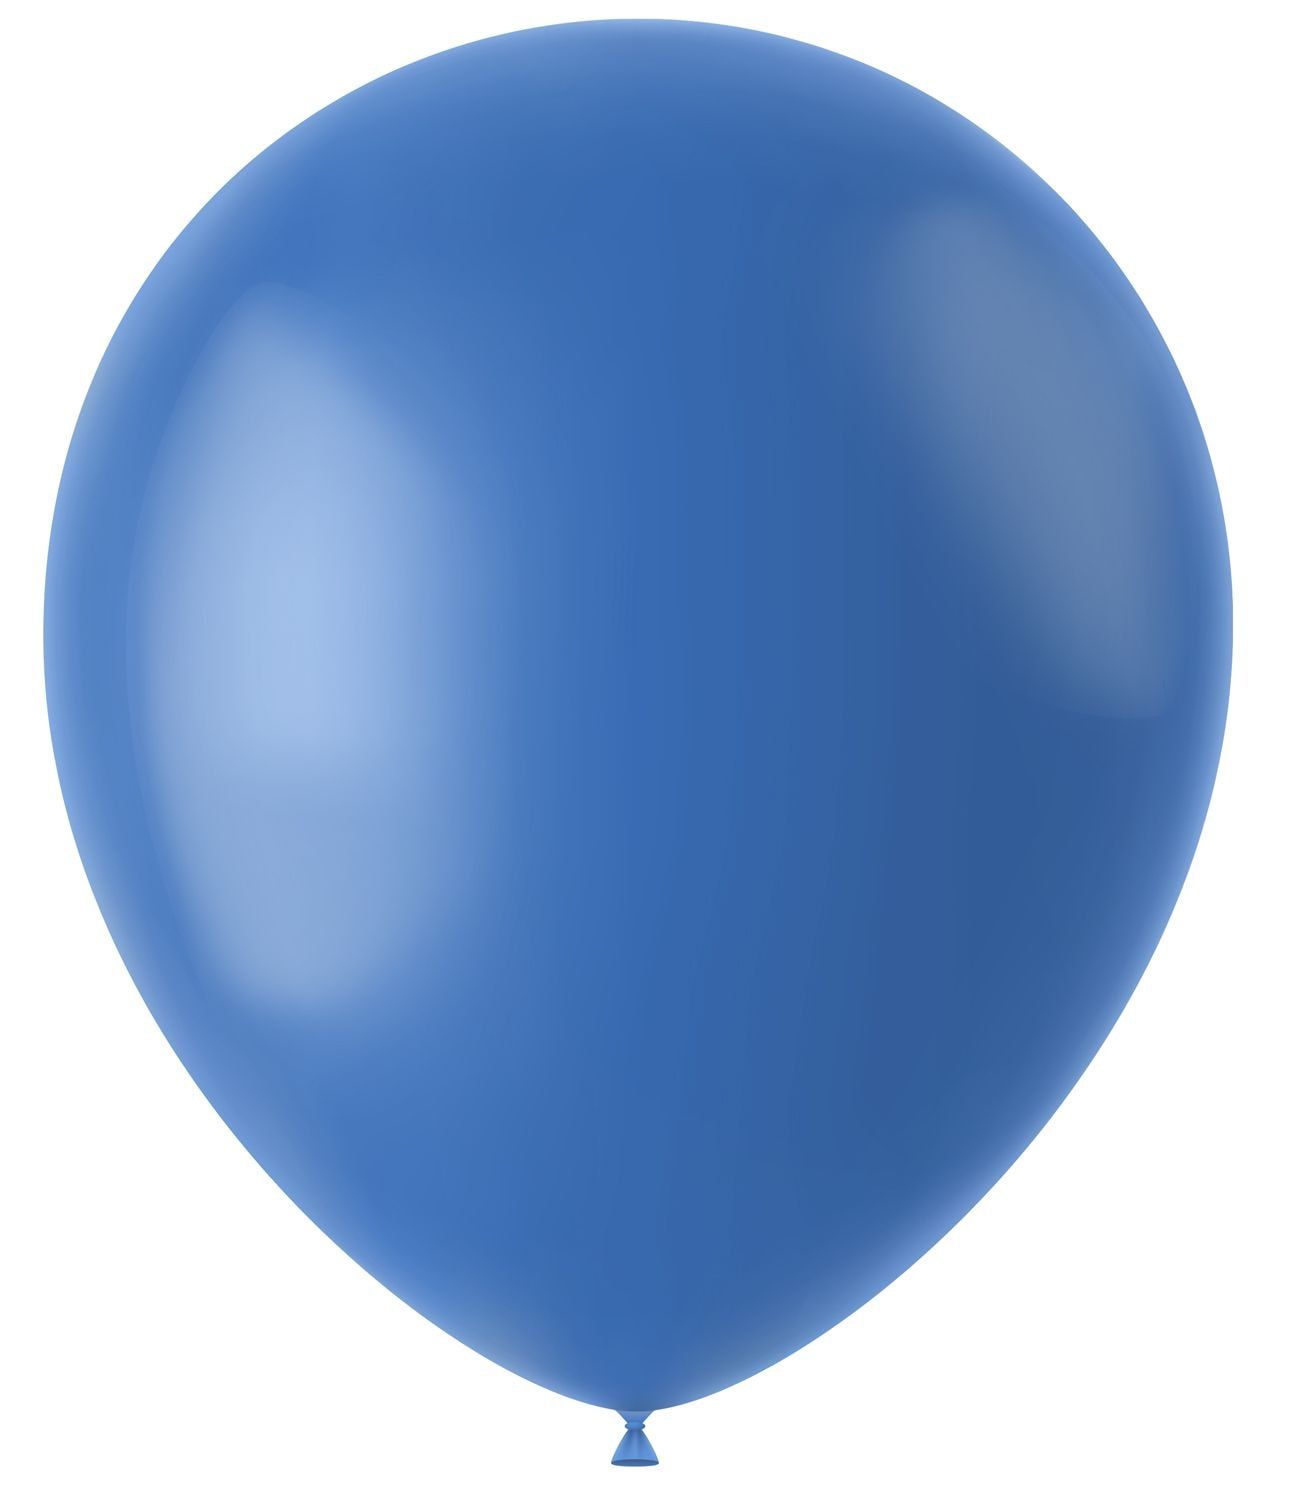 Dutch blauwe mat ballonnen 50 stuks